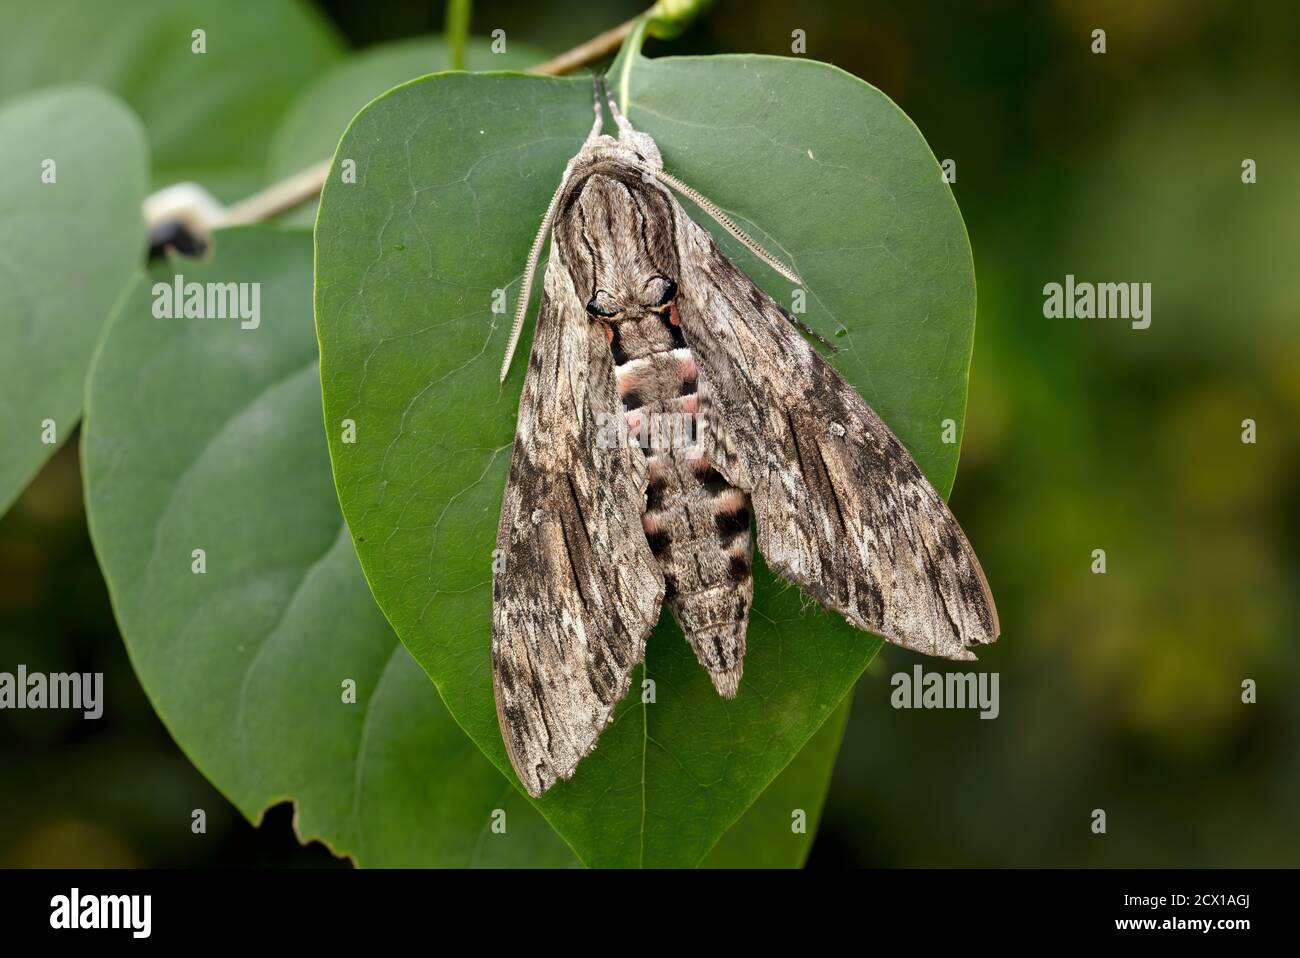 Moth, Hawk Moth, Sphingidae, Nature, Insect, Switzerland, Agrius convolvuli, convolvulus hawk-moth Stock Photo